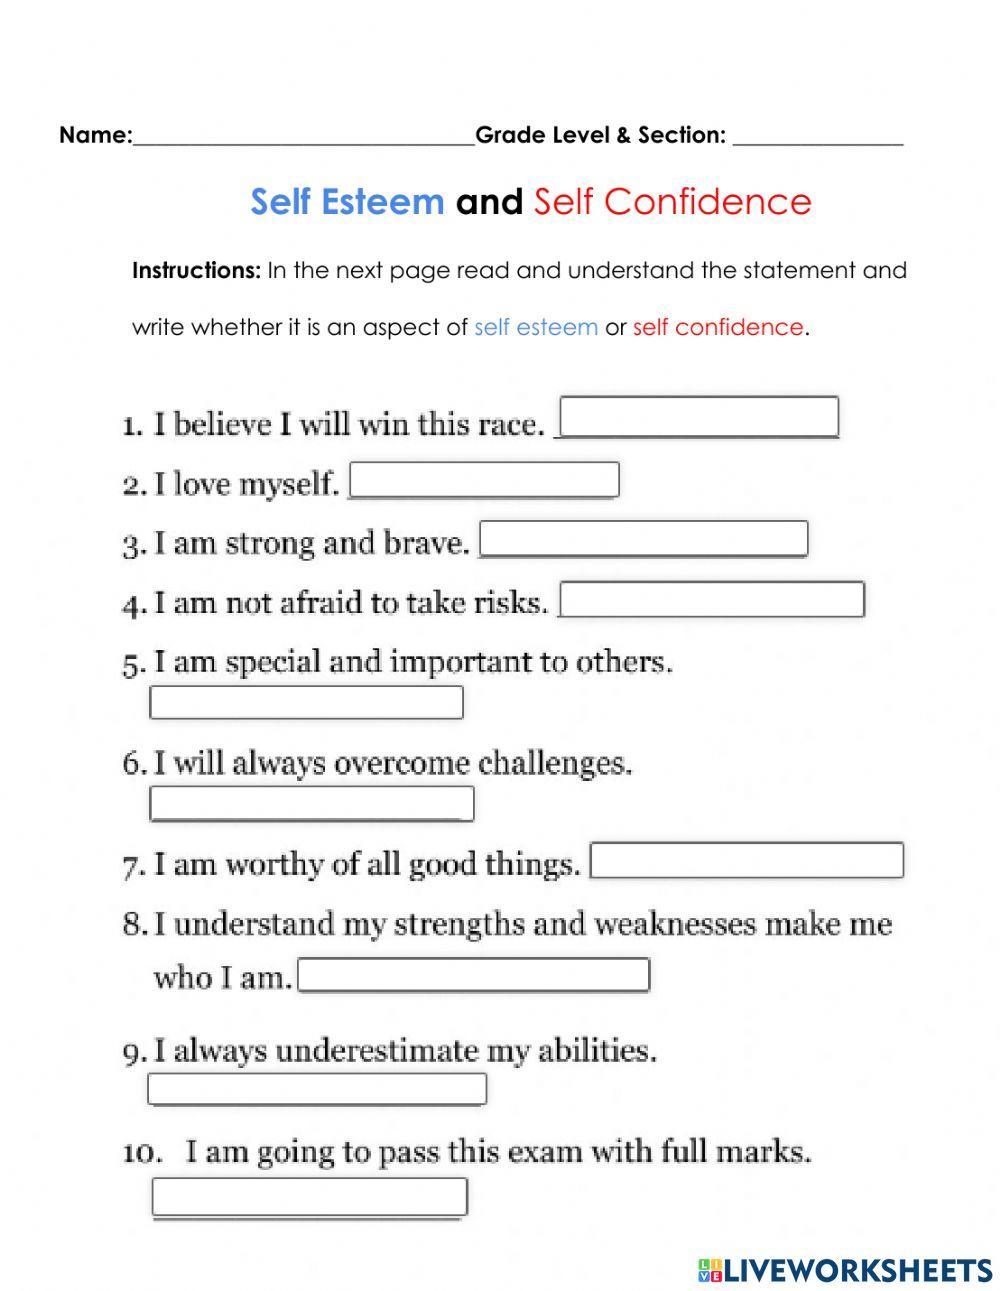 Self esteem and self confidence